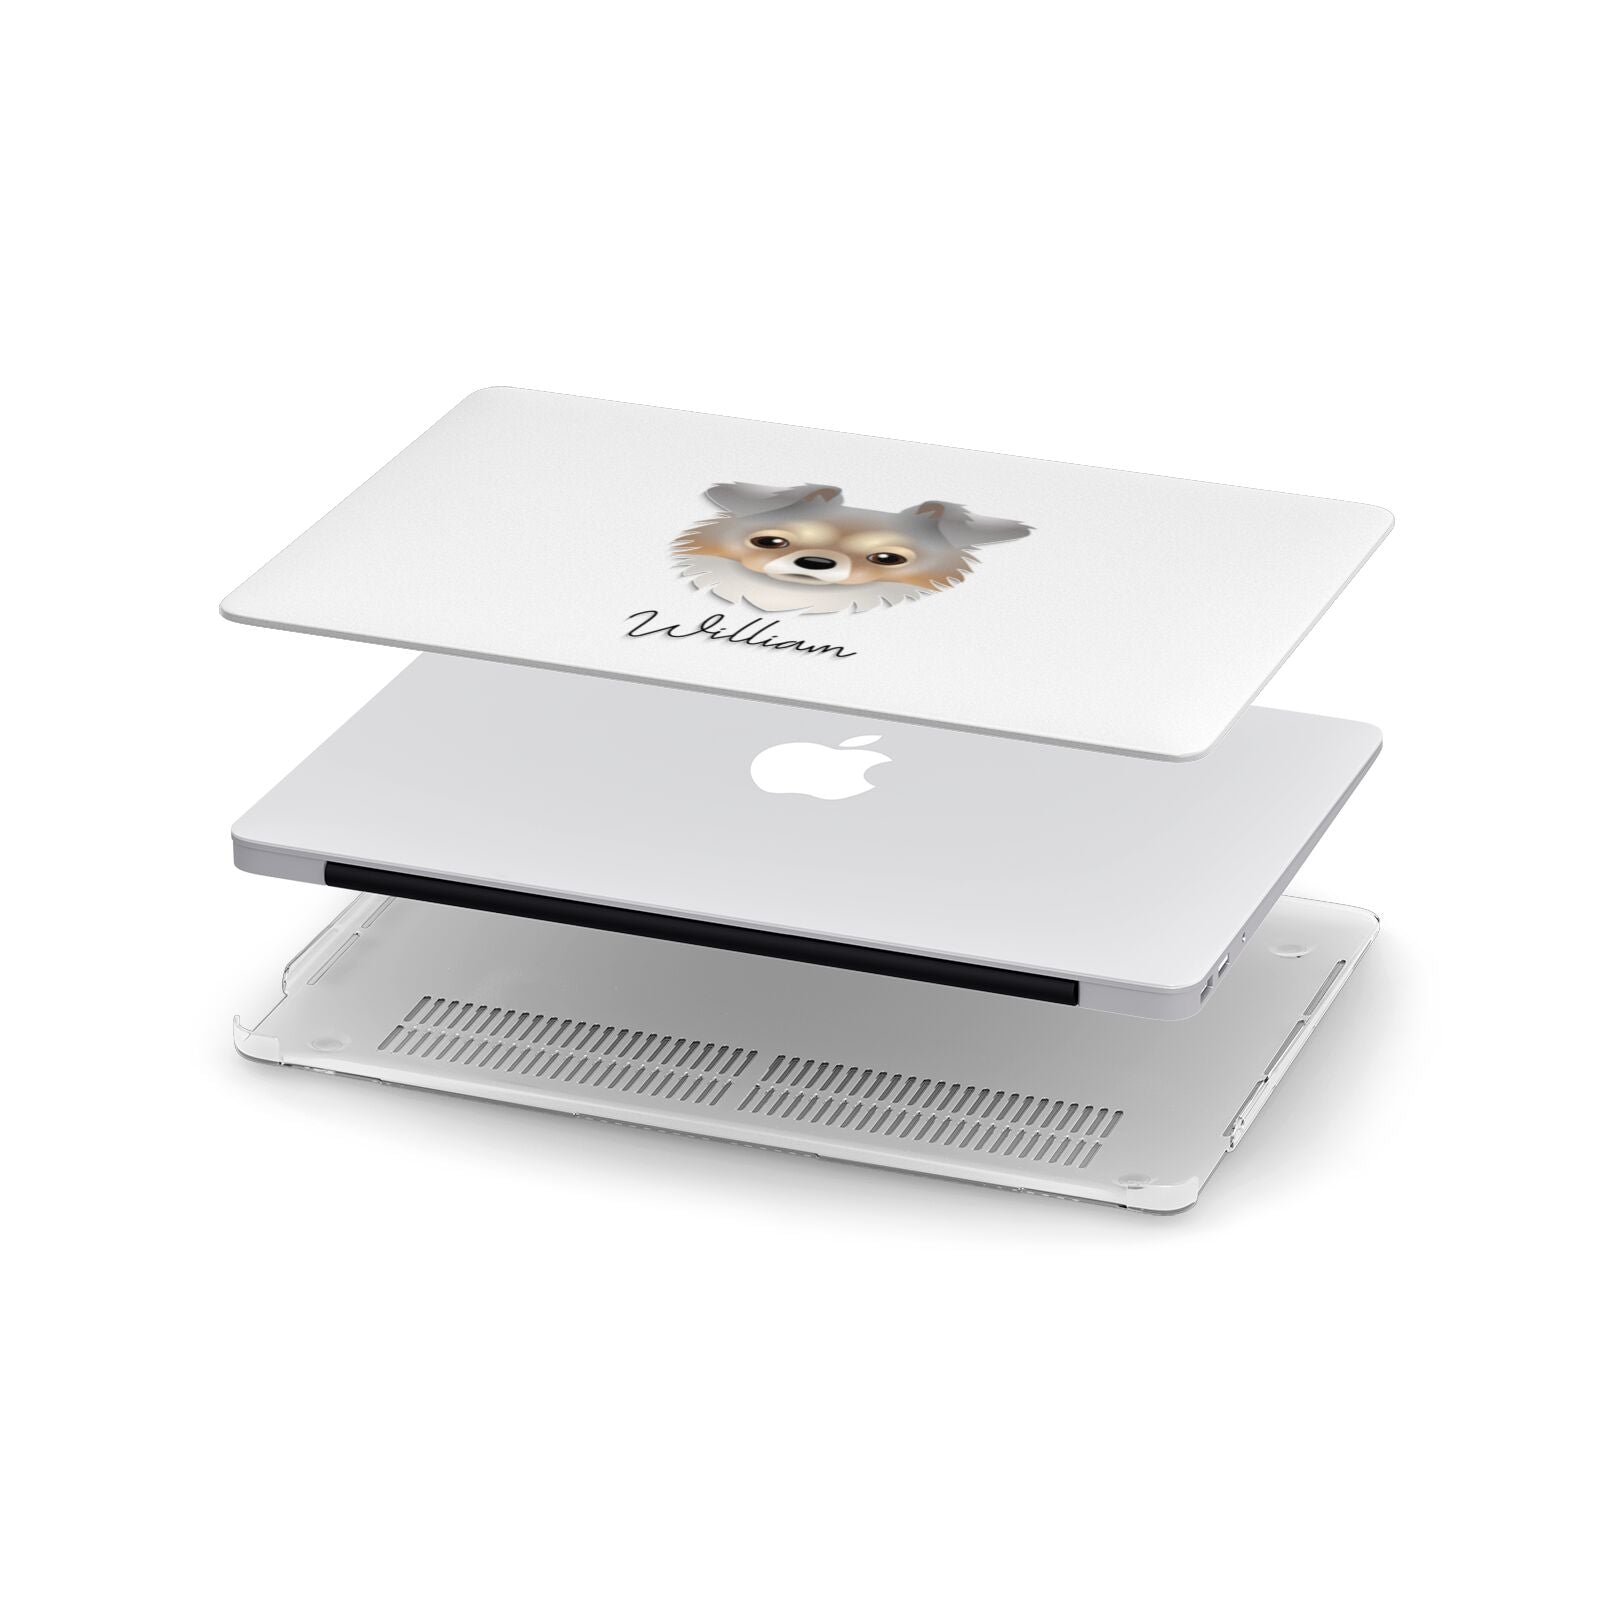 Chorkie Personalised Apple MacBook Case in Detail